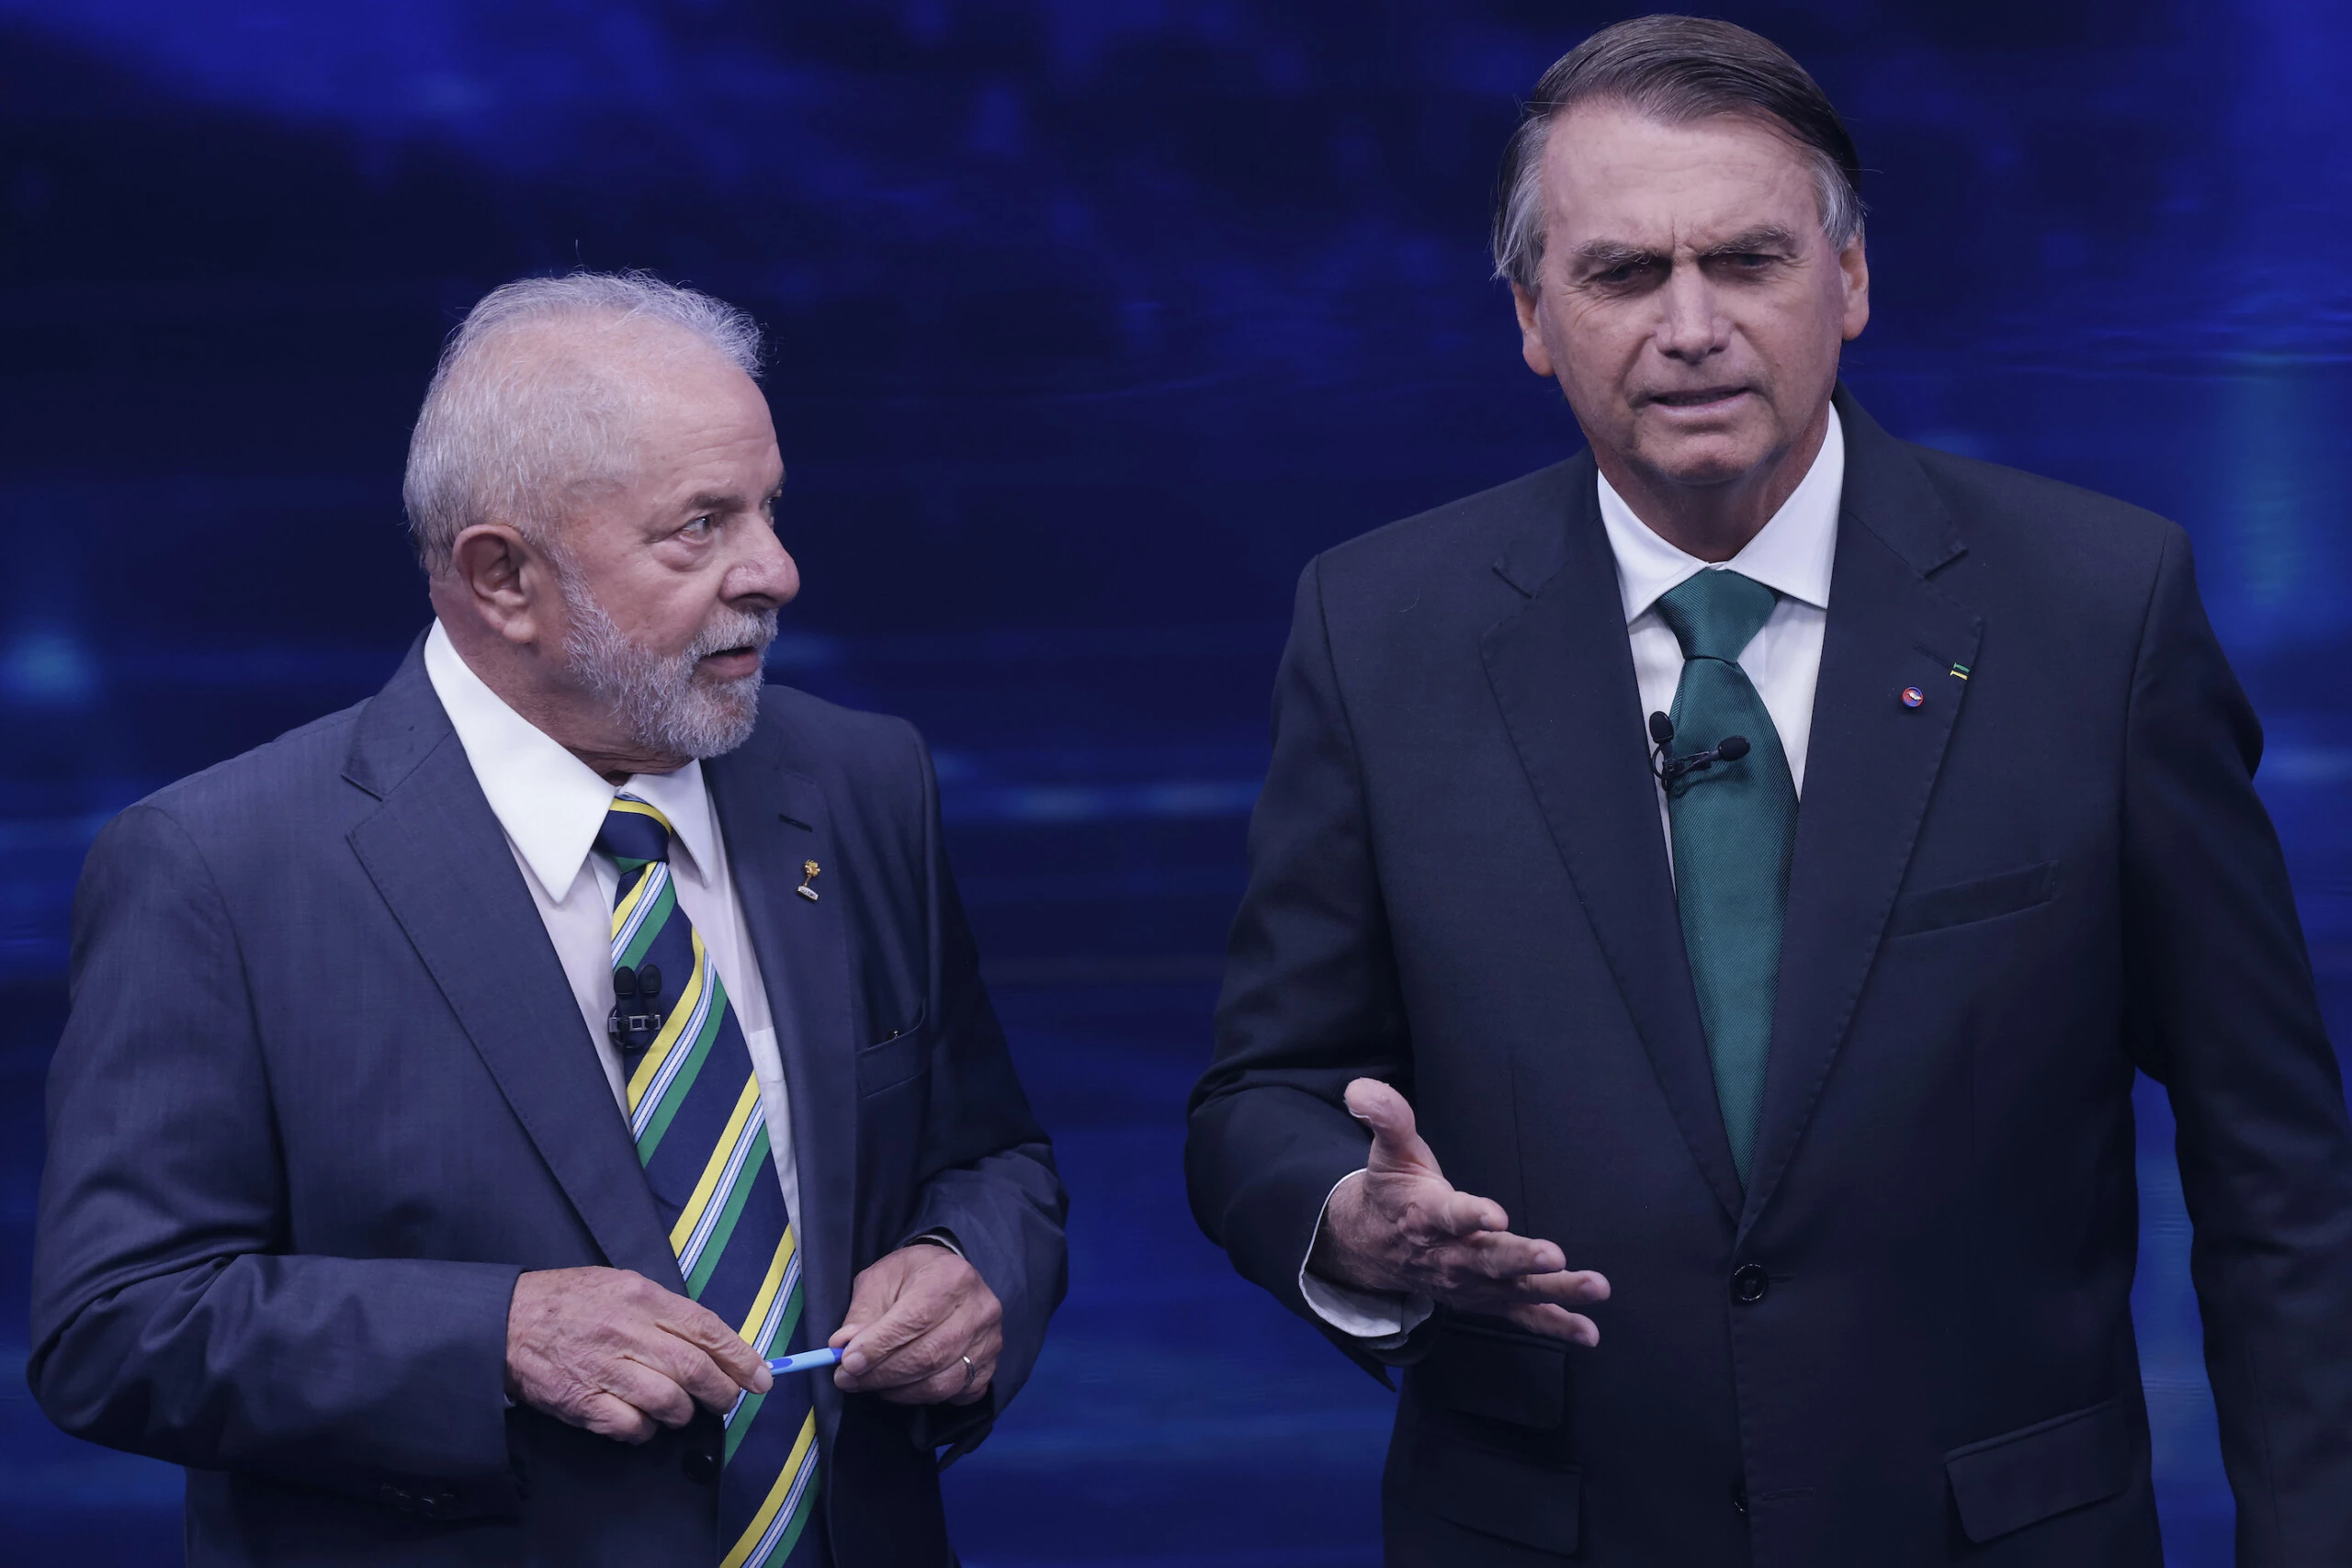 "Bolsonaro dá entrevista para qualquer canal de YouTube que apoia ele", afirmou Calheiros. "Nós, produtores de conteúdo da esquerda, tomamos perdido de assessoria de vereador. Imagine falar com Lula".